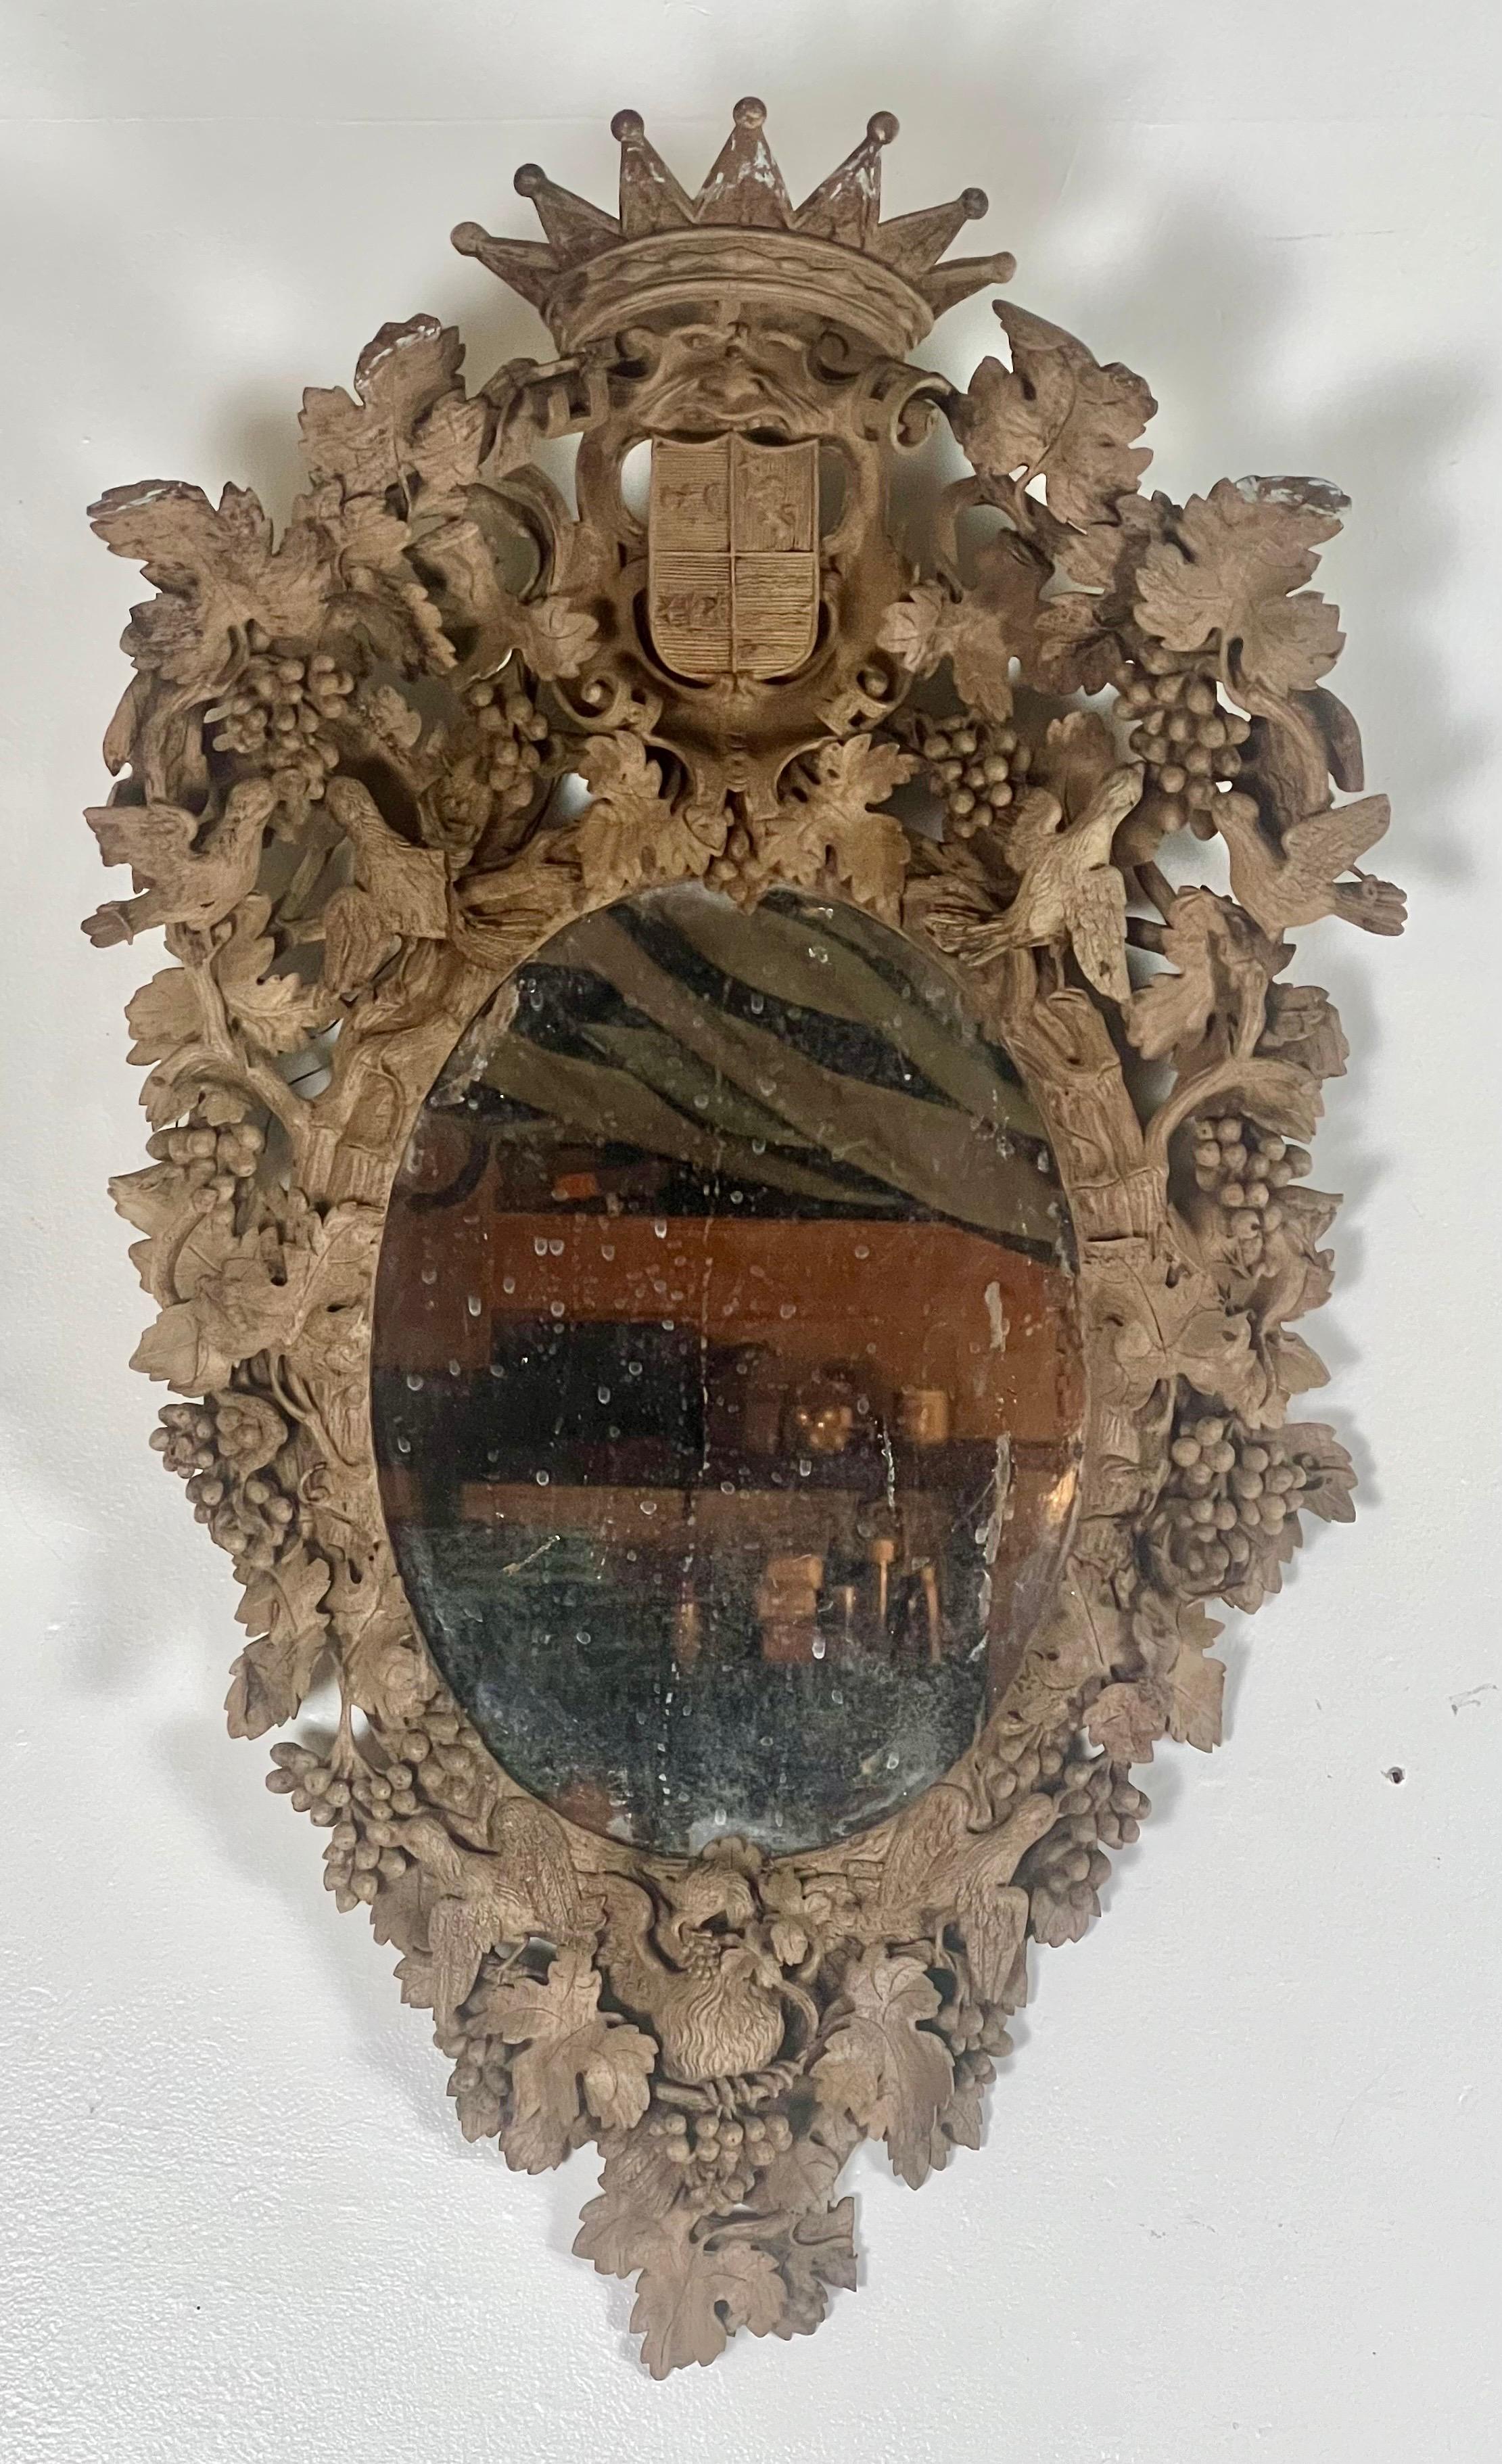 Miroir allemand du XVIIIe siècle, finement détaillé avec une couronne, des armoiries, des vignes avec des raisins et des feuilles, et de petits oiseaux, le tout entourant un miroir de forme ovale.